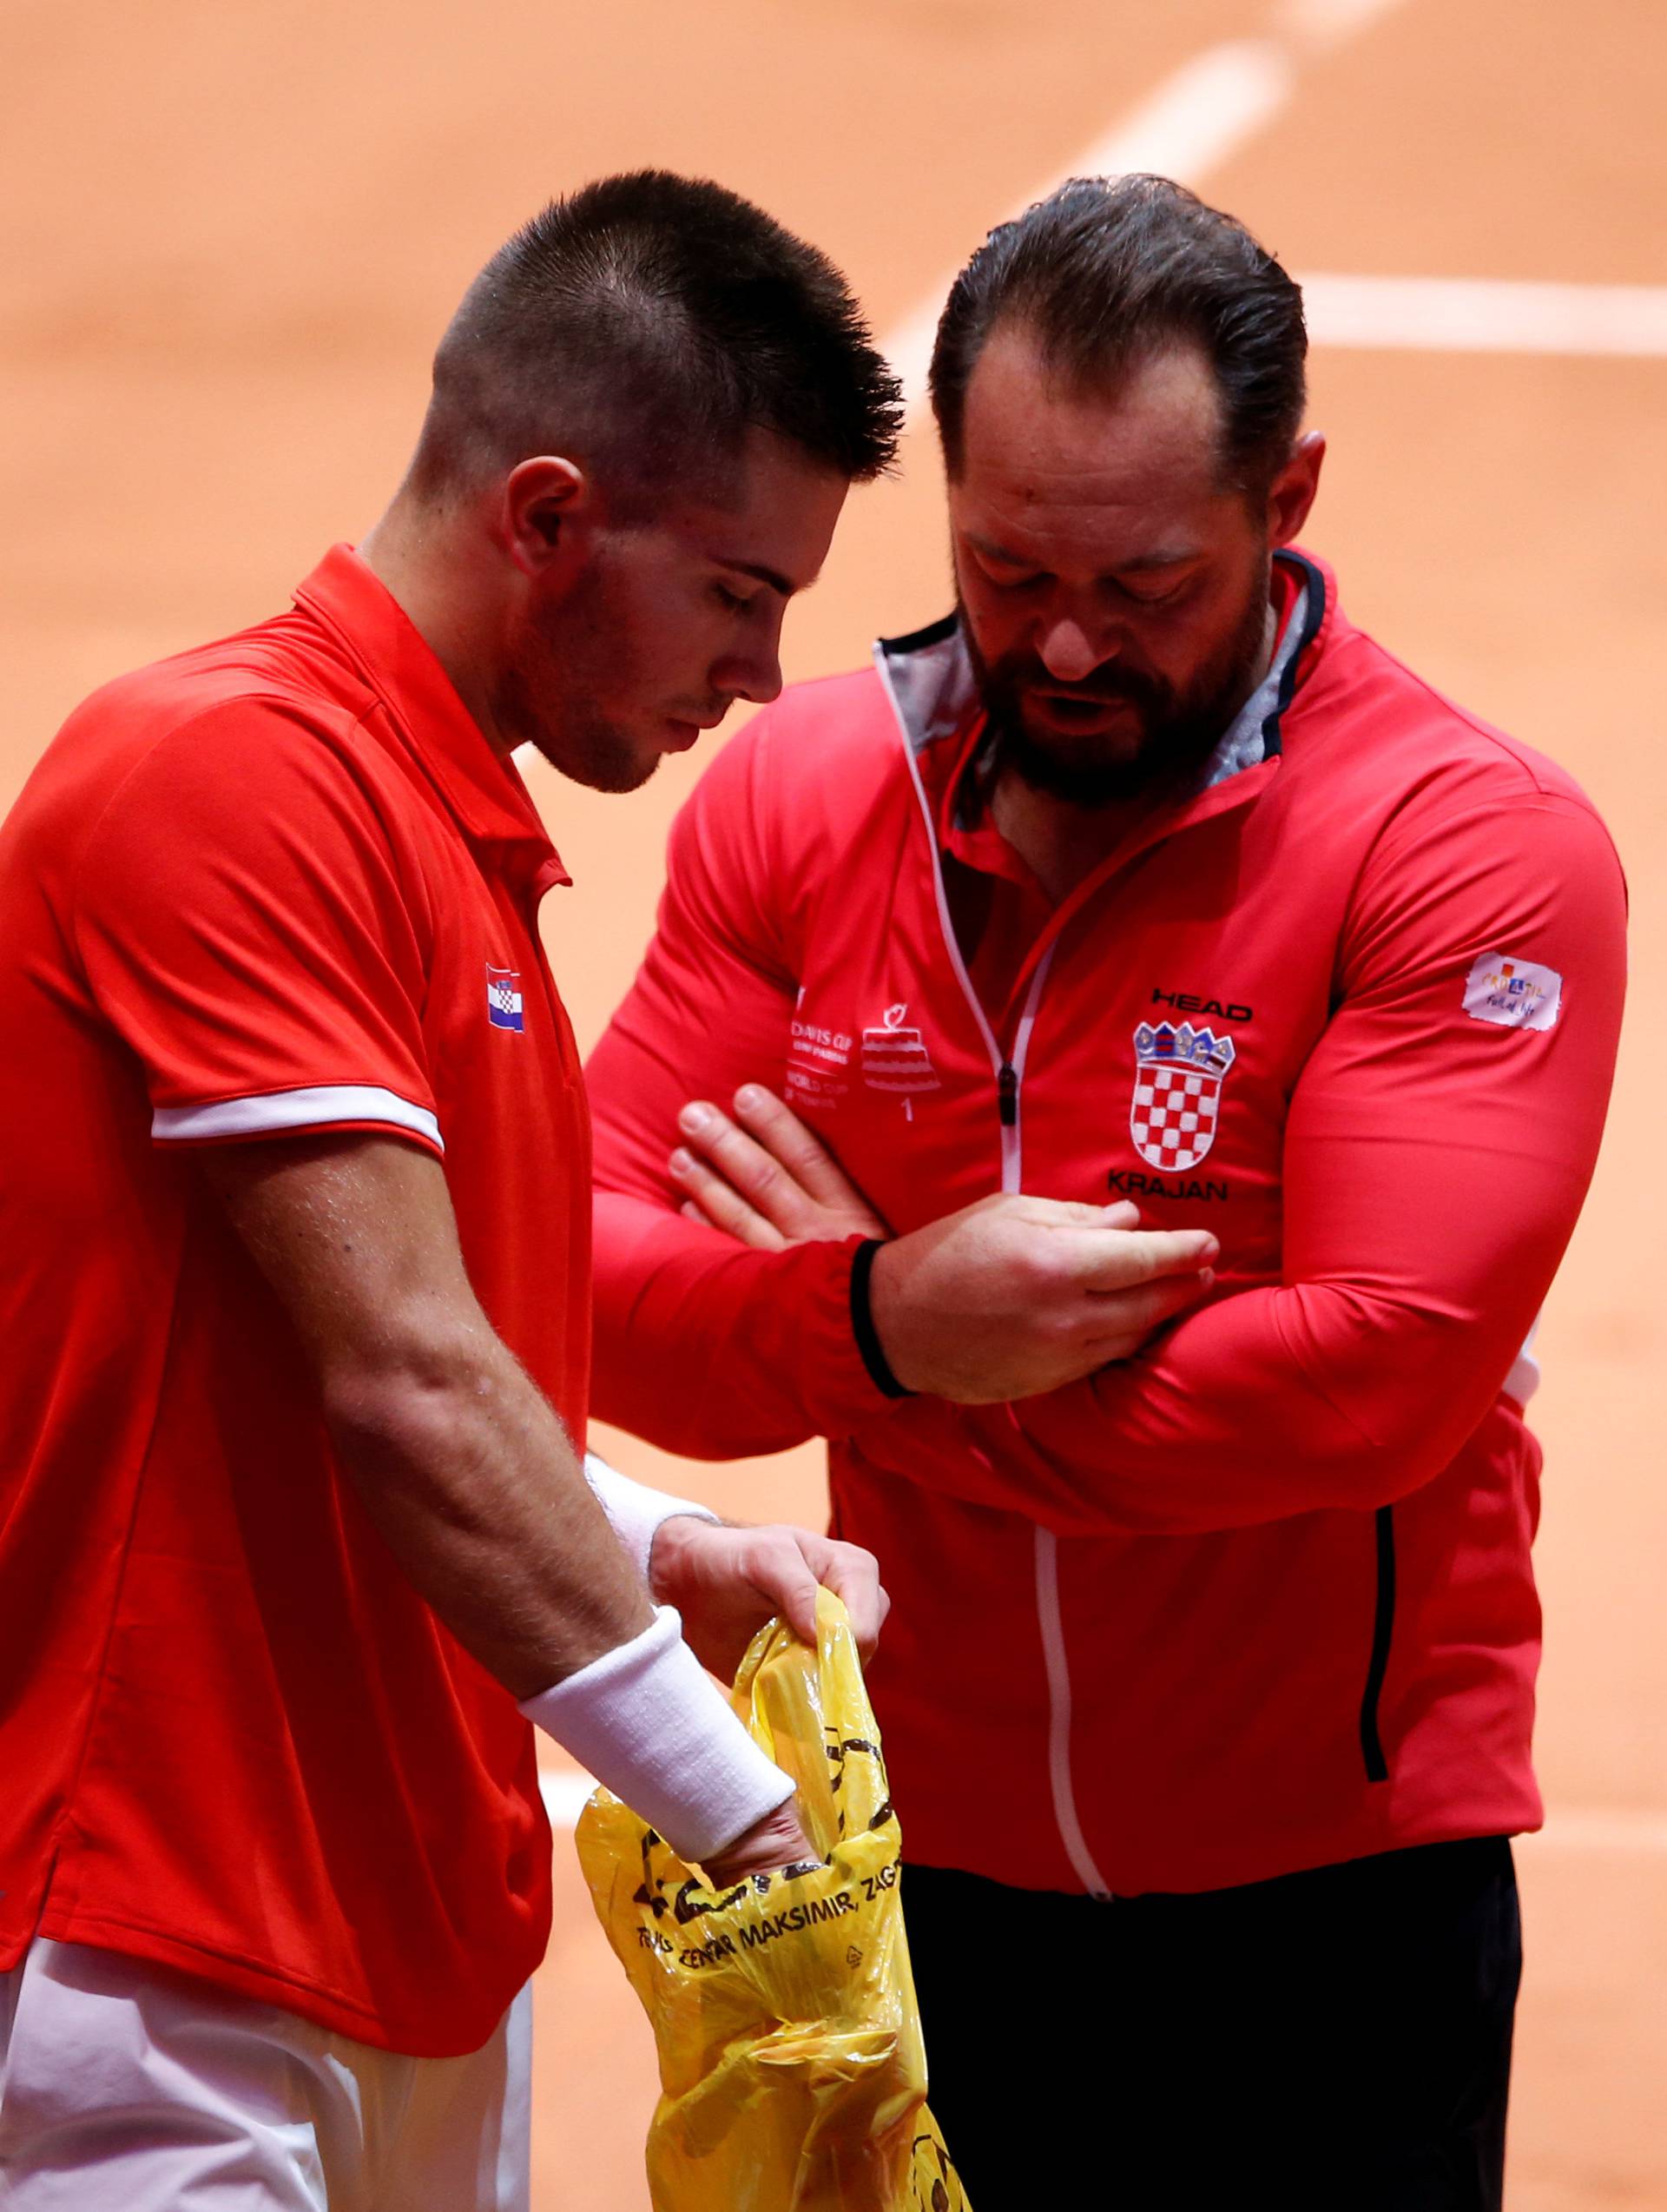 Davis Cup Final - France v Croatia